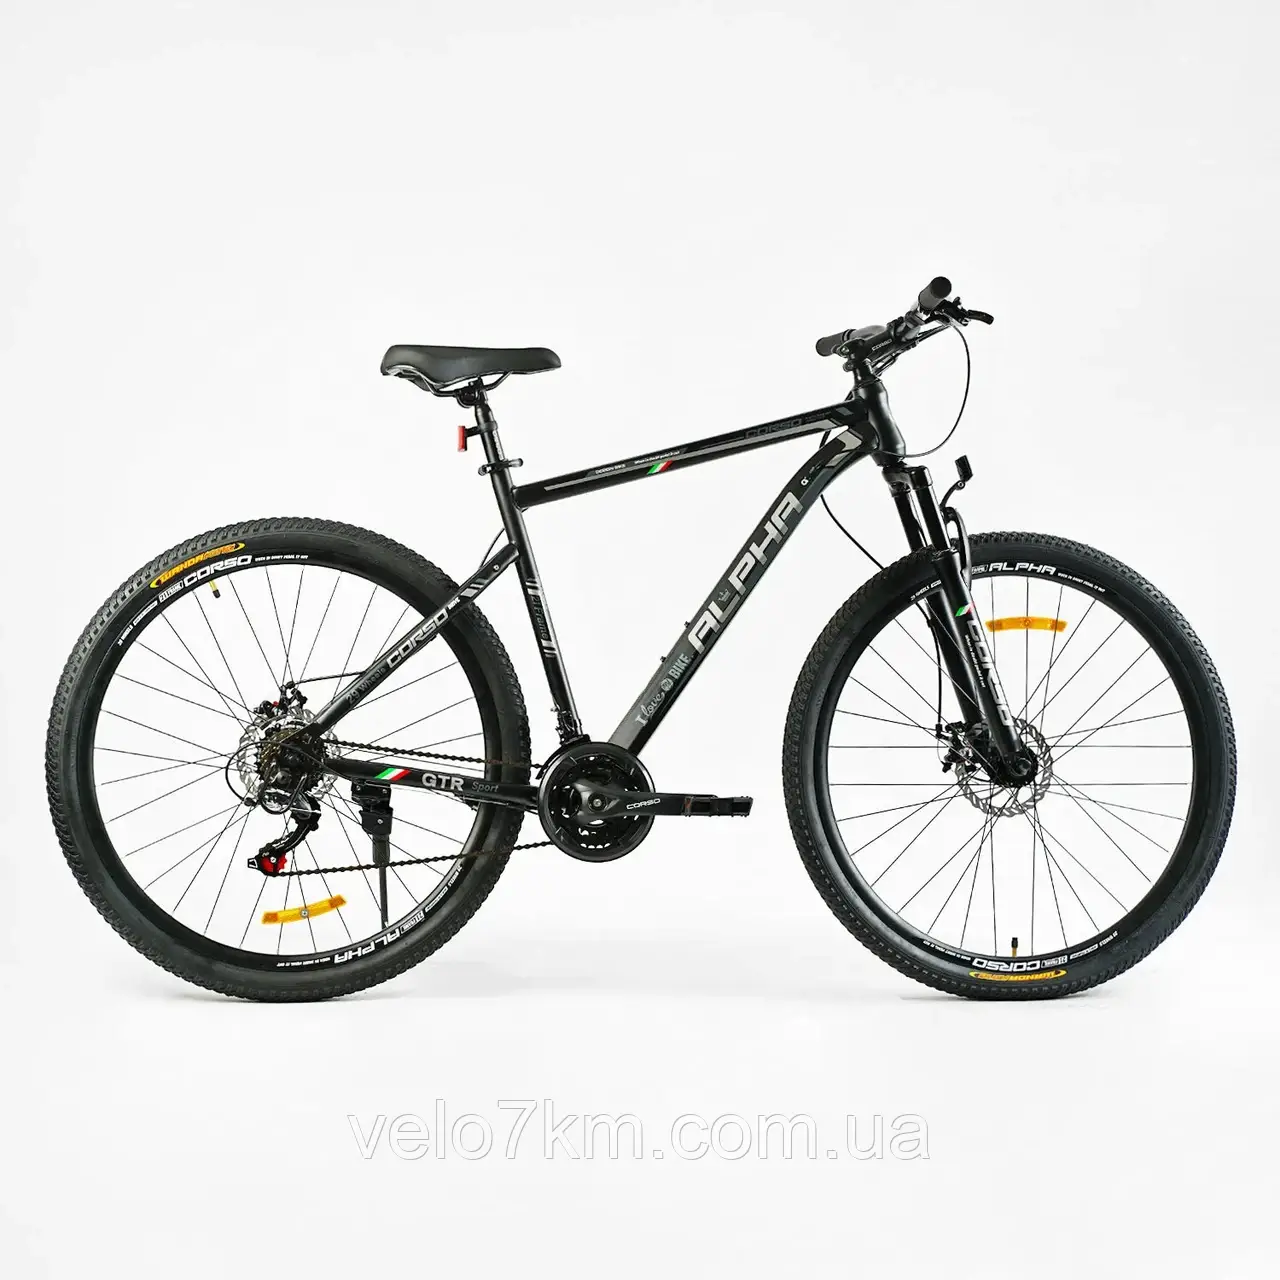 Спортивний велосипед Corso Alpha 29" сталева рама 21" обладнання Shimano 21 швидкість, зібраний на 75%